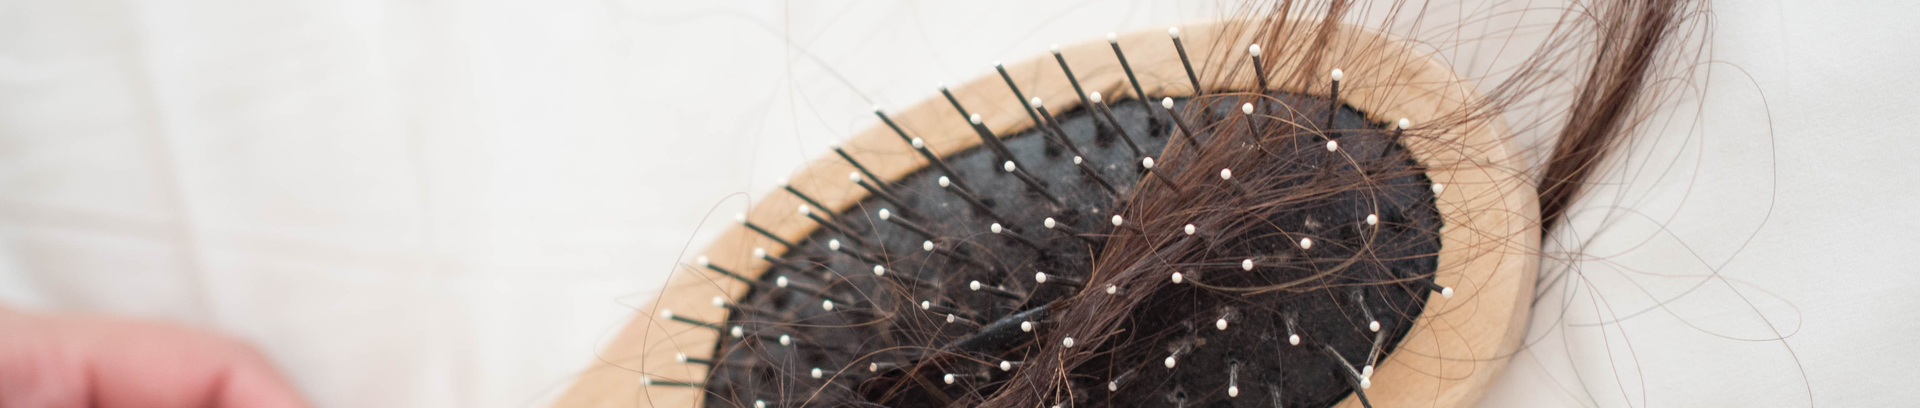 Haarasufall: Ein Büschel Haare, das in einer Bürste hängt